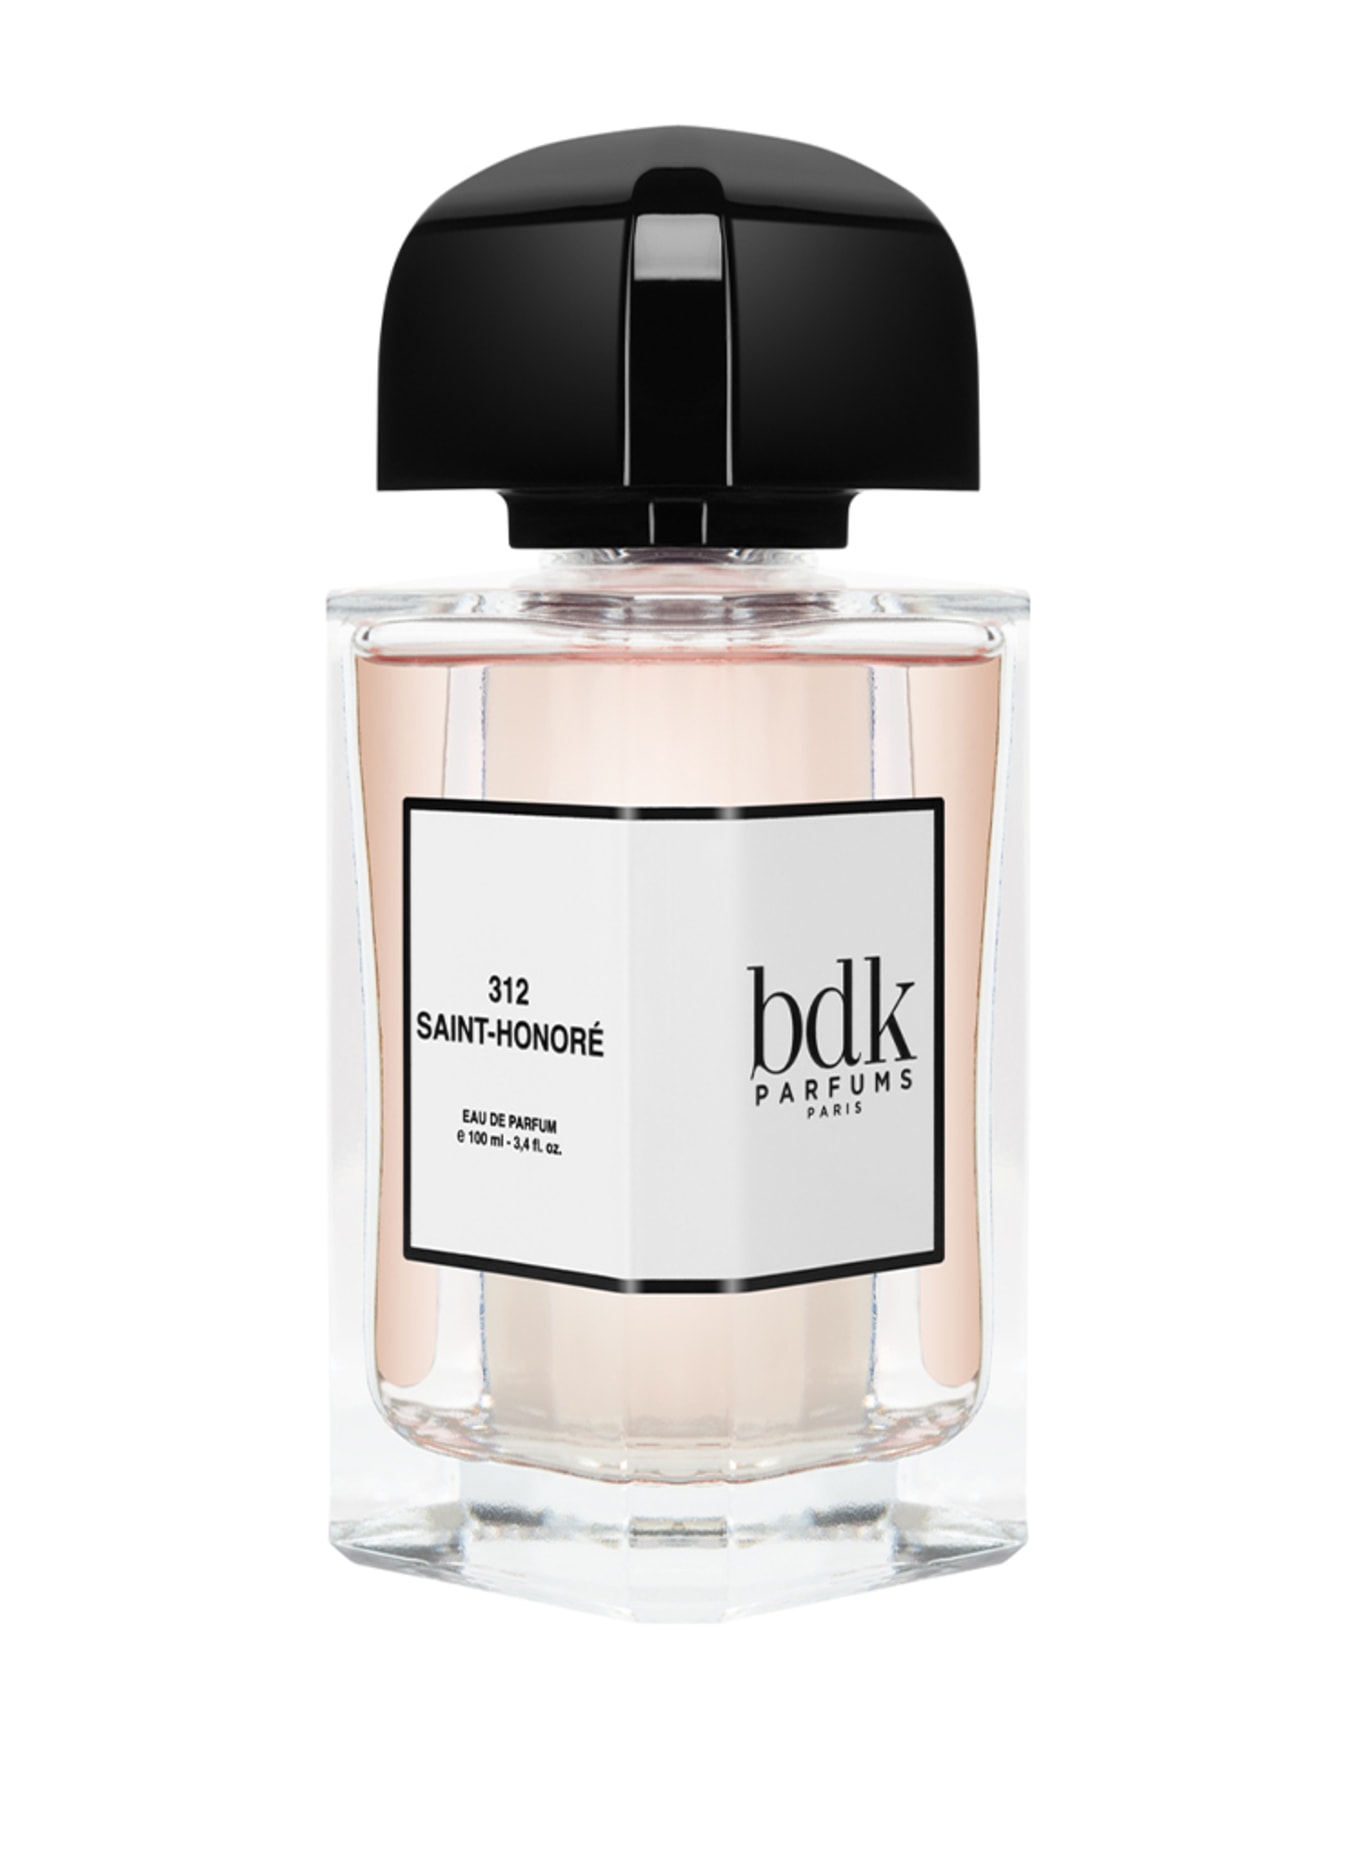 bdk Parfums 312 SAINT-HONORÉ (Bild 1)